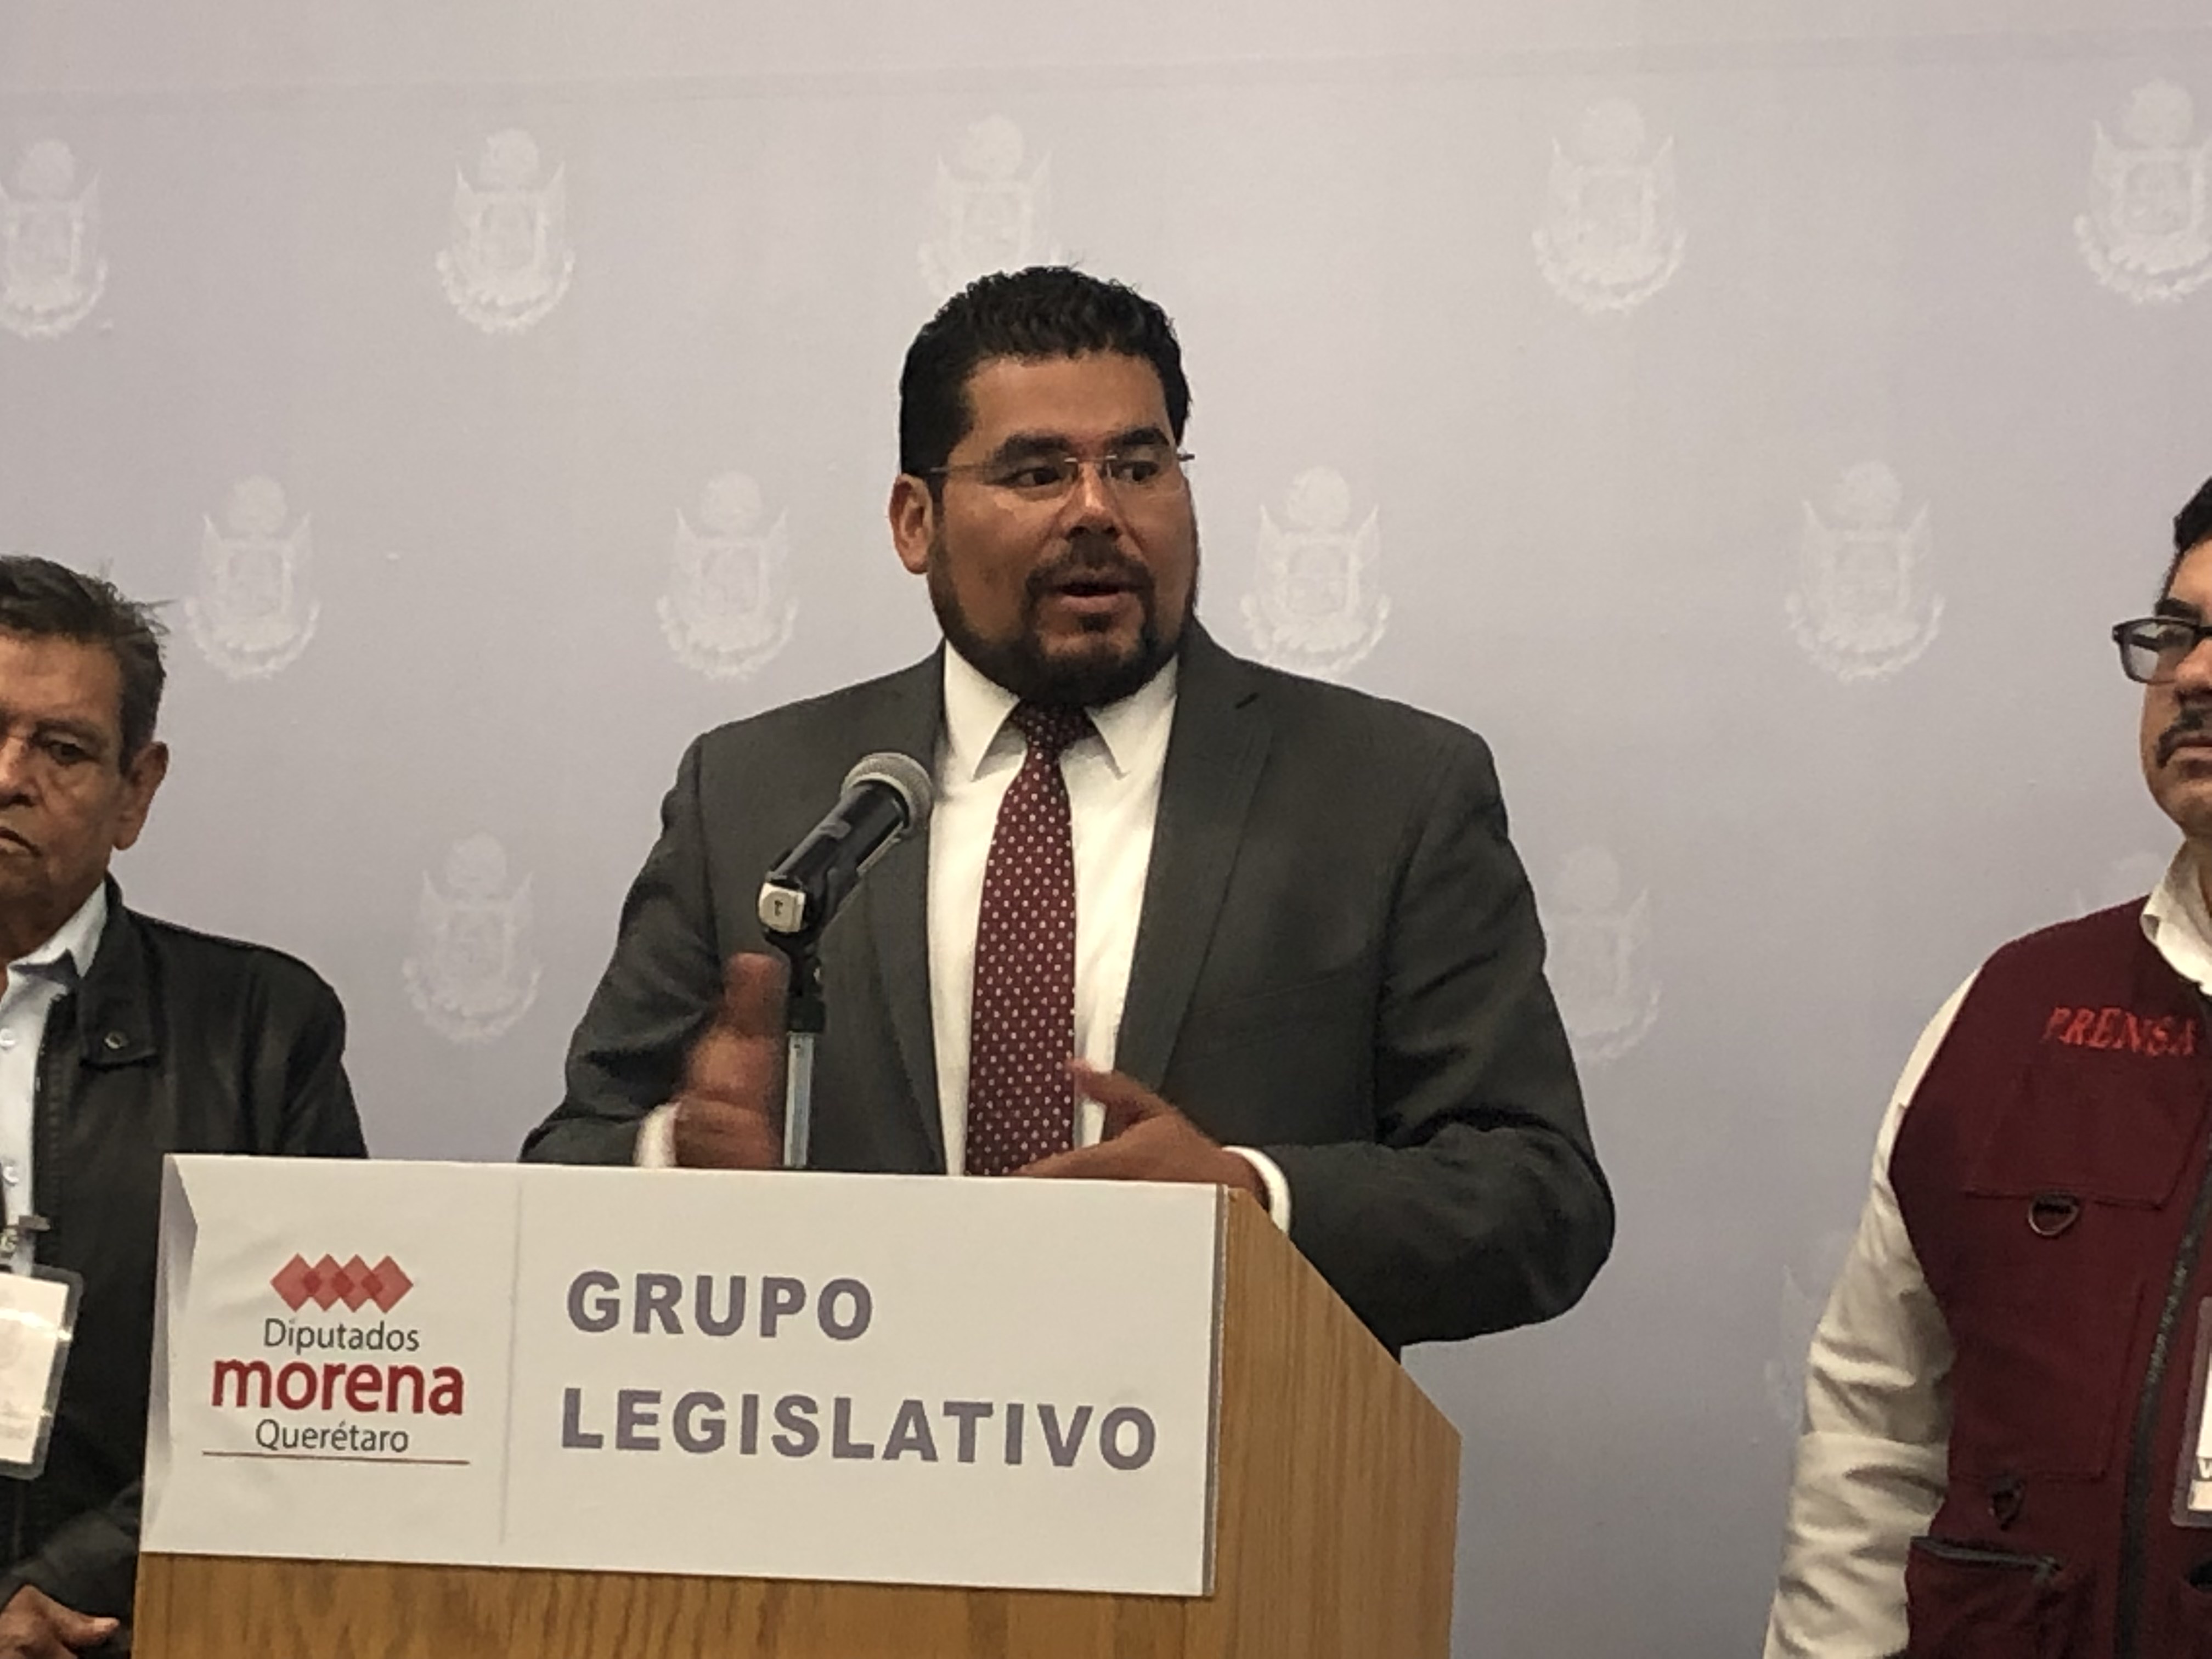  Necesario abrir Mesa Directiva local a partidos de oposición: Morena